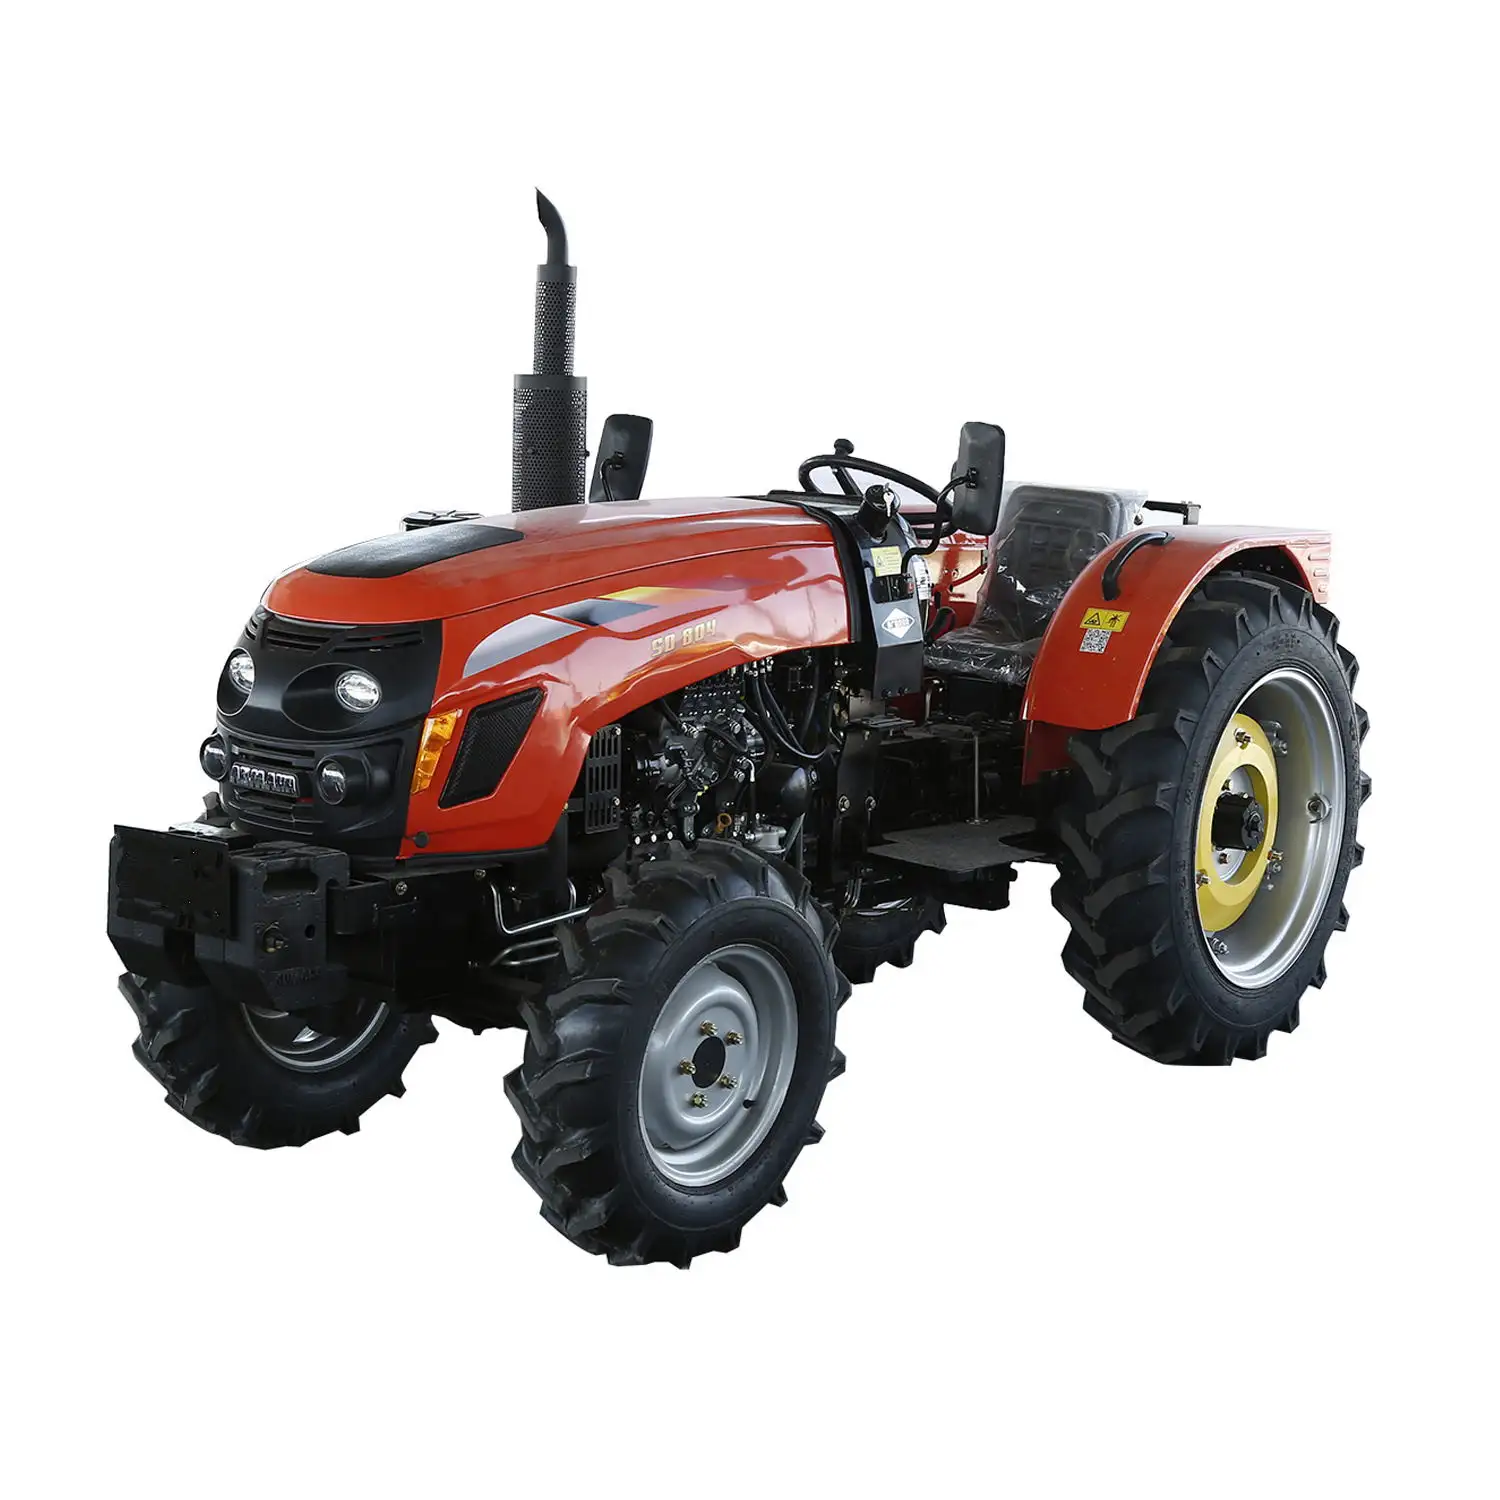 Kubota Traktor zum Verkauf verfügbar Traktoren für landwirtschaft liche Maschinen Gebraucht und neuer günstiger Preis